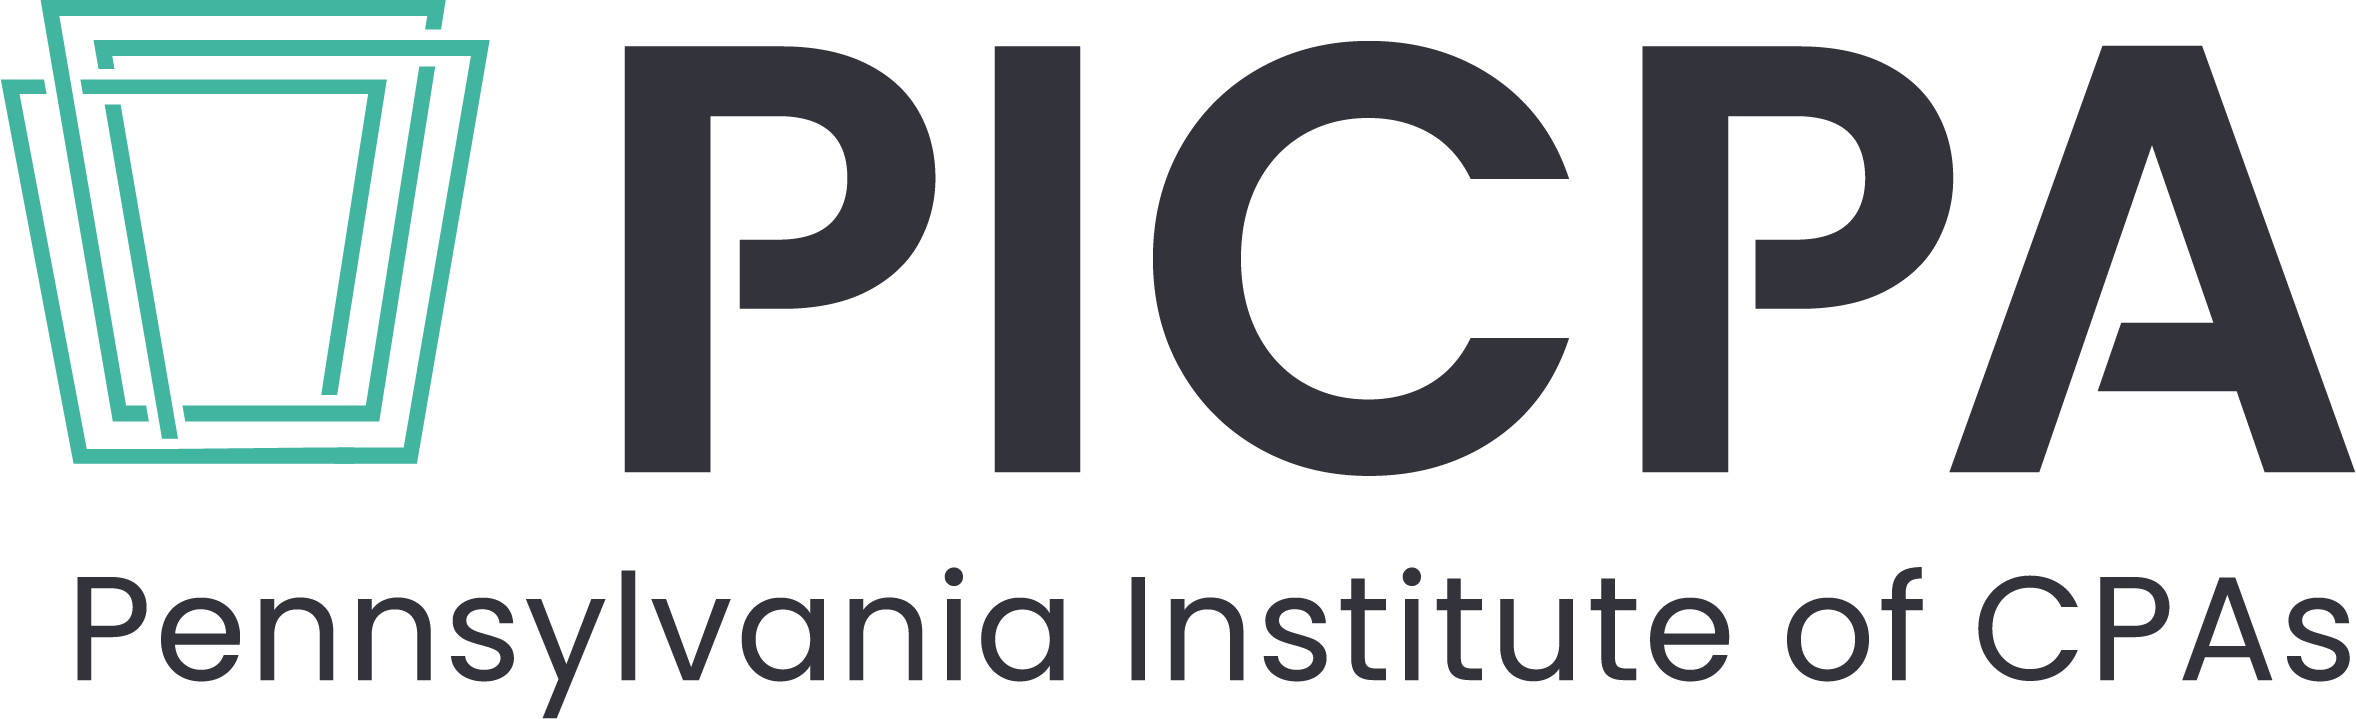 PICPA Knowledge Hub Logo